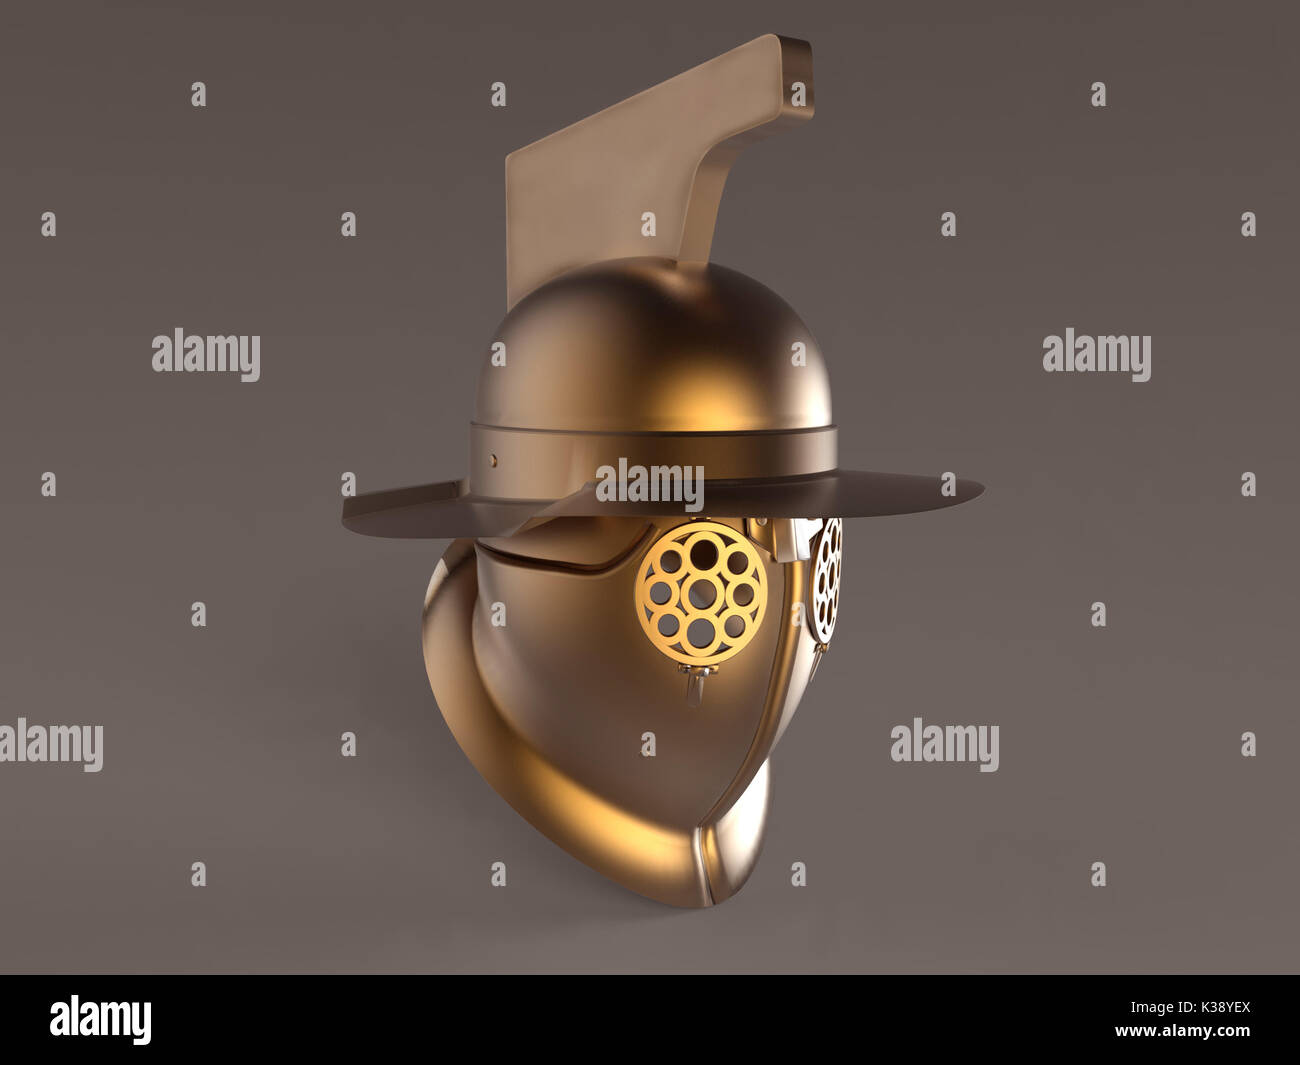 Gladiator's helmet Stock Photo